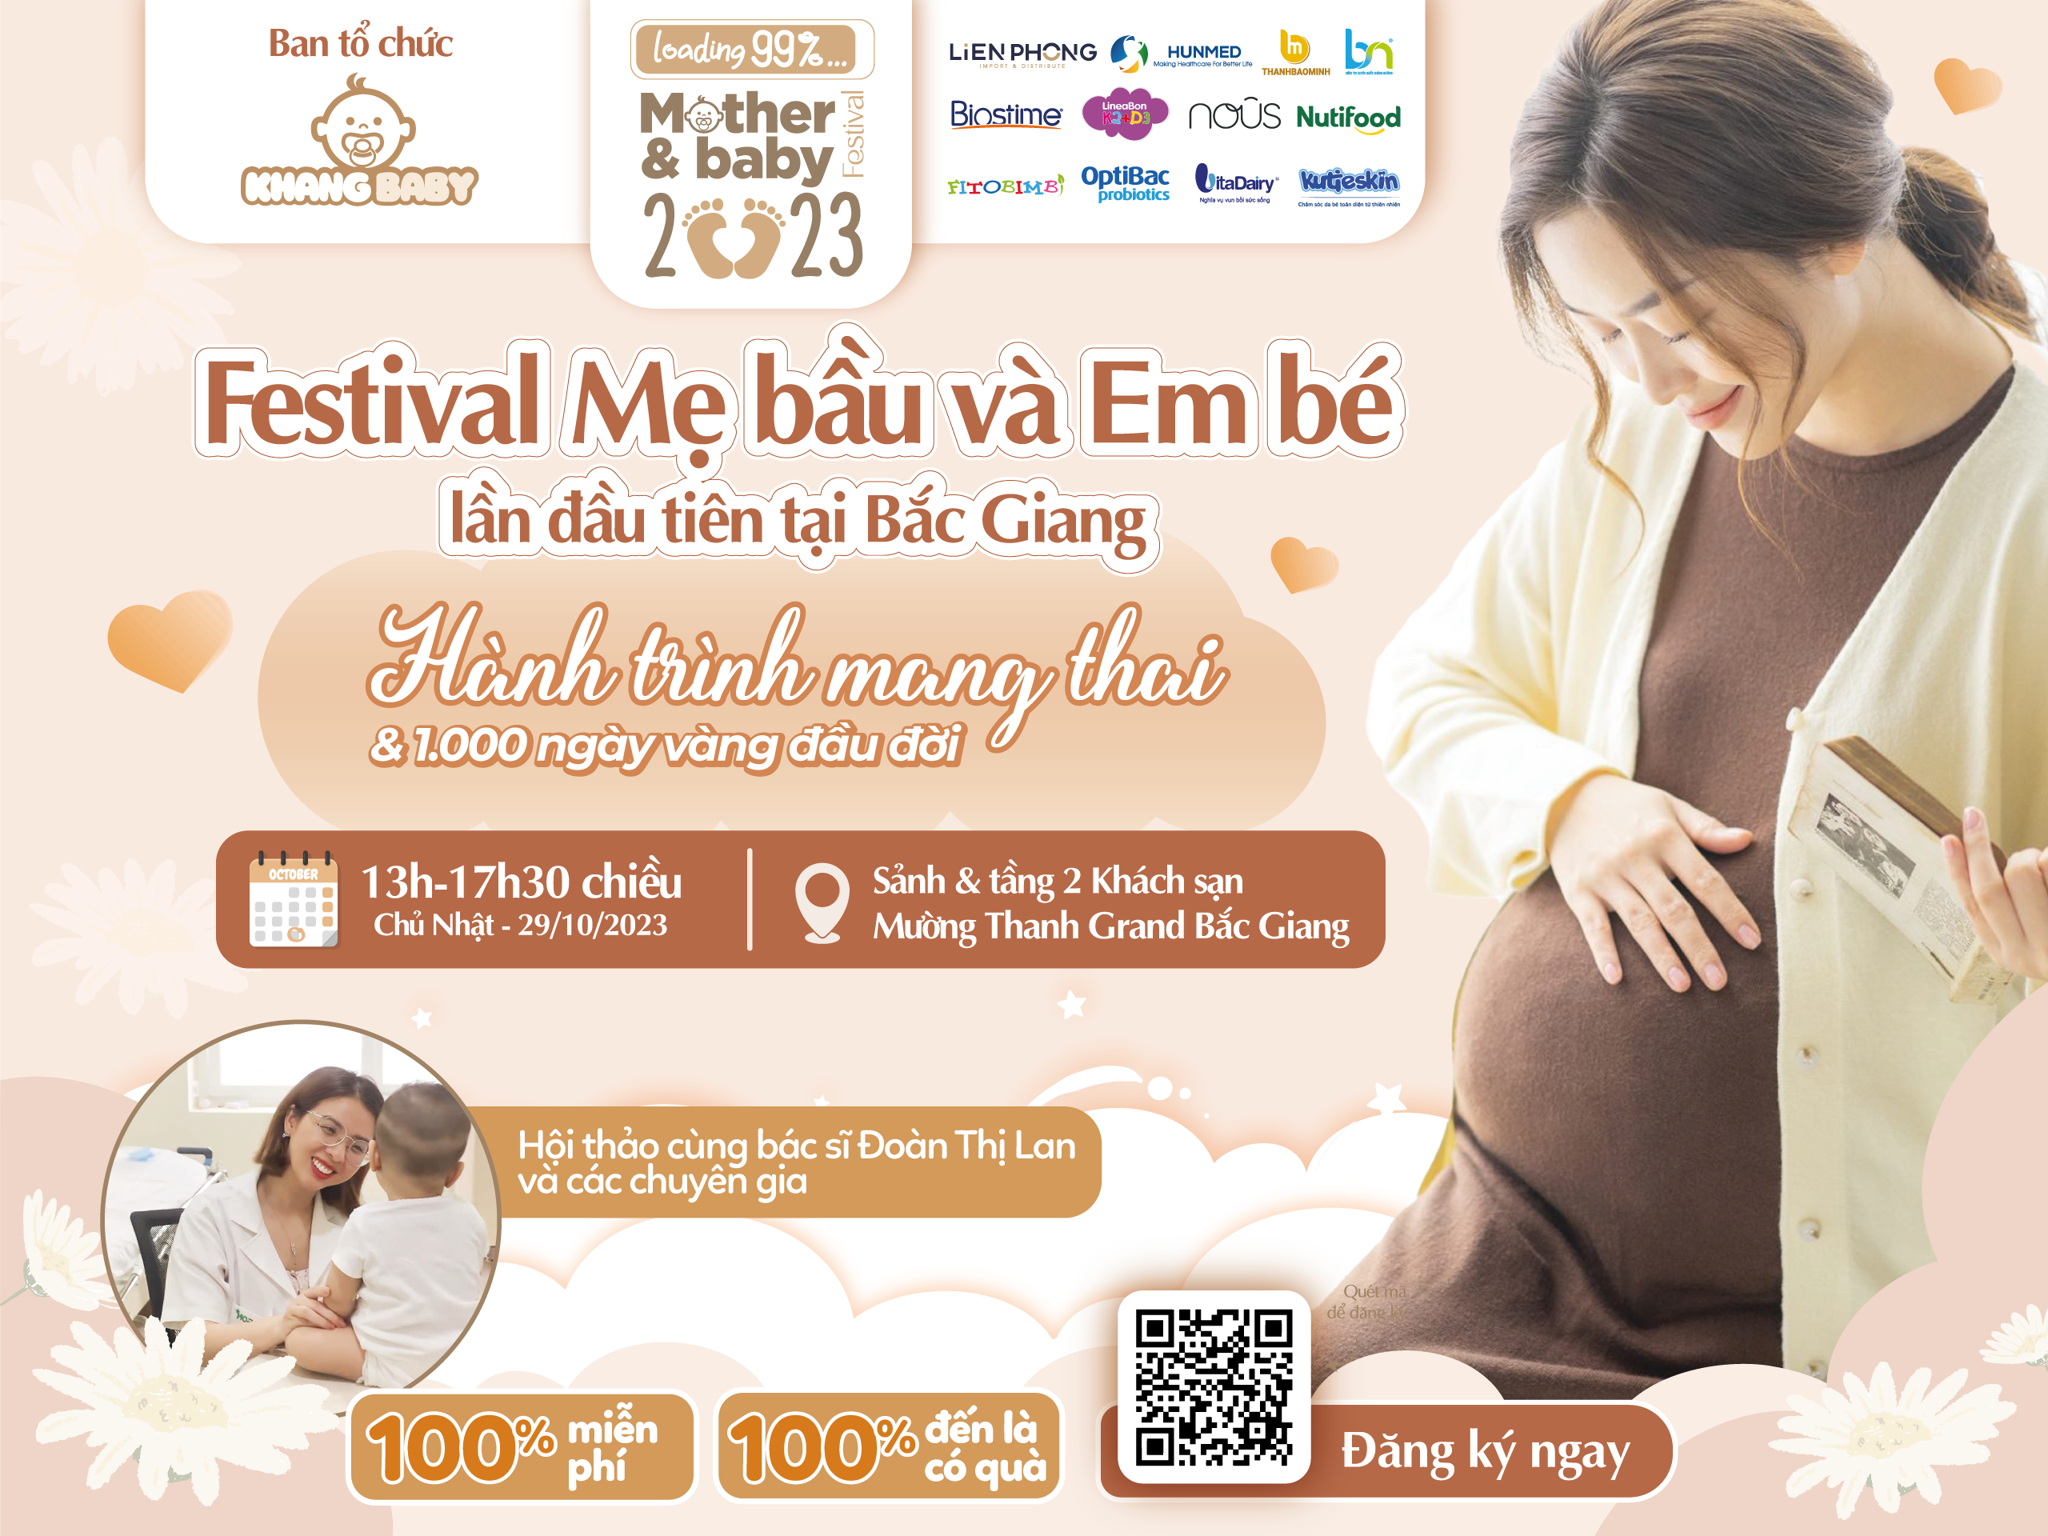 Festival Mẹ bầu và em bé 2023 - Hành trình mang thai và 1000 ngày vàng đầu đời của bé